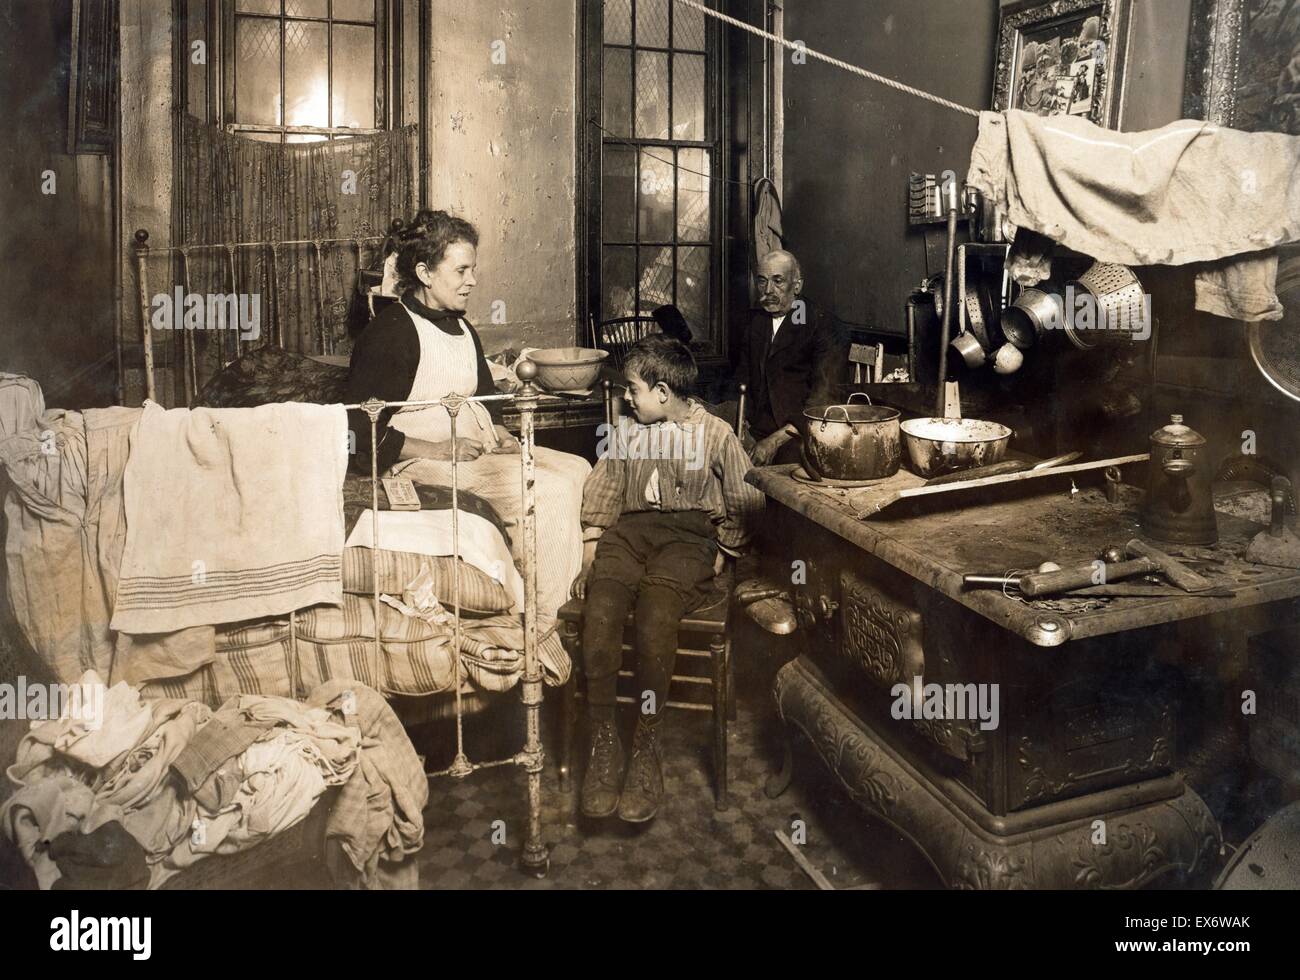 Jimmie Chinquanana, New York. Nel buio, la camera interna di casa sua, nella parte posteriore della loro famiglia store. il nono bambino, sei dei quali sono morti. Foto di Lewis Hine W., 1913. Foto Stock